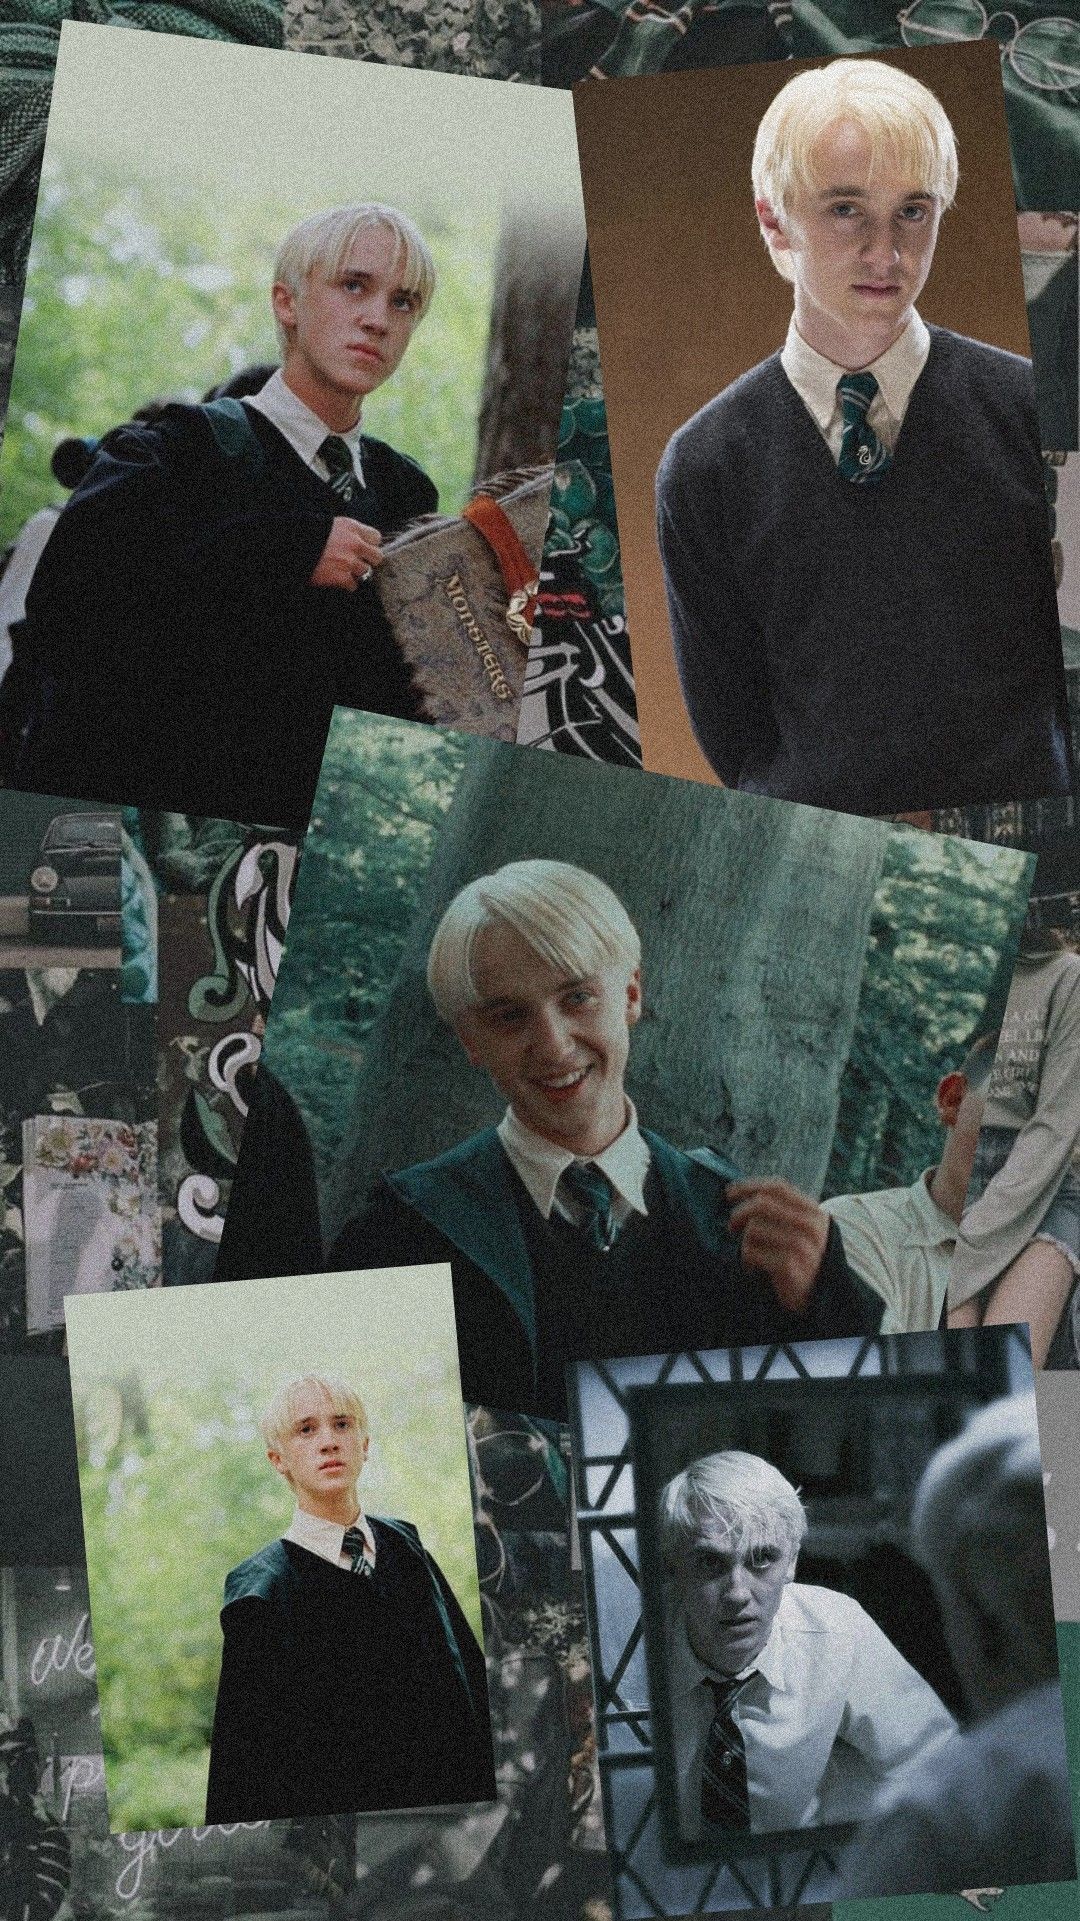 Draco Malfoy  Draco malfoy aesthetic, Draco malfoy, Draco malfoy hot